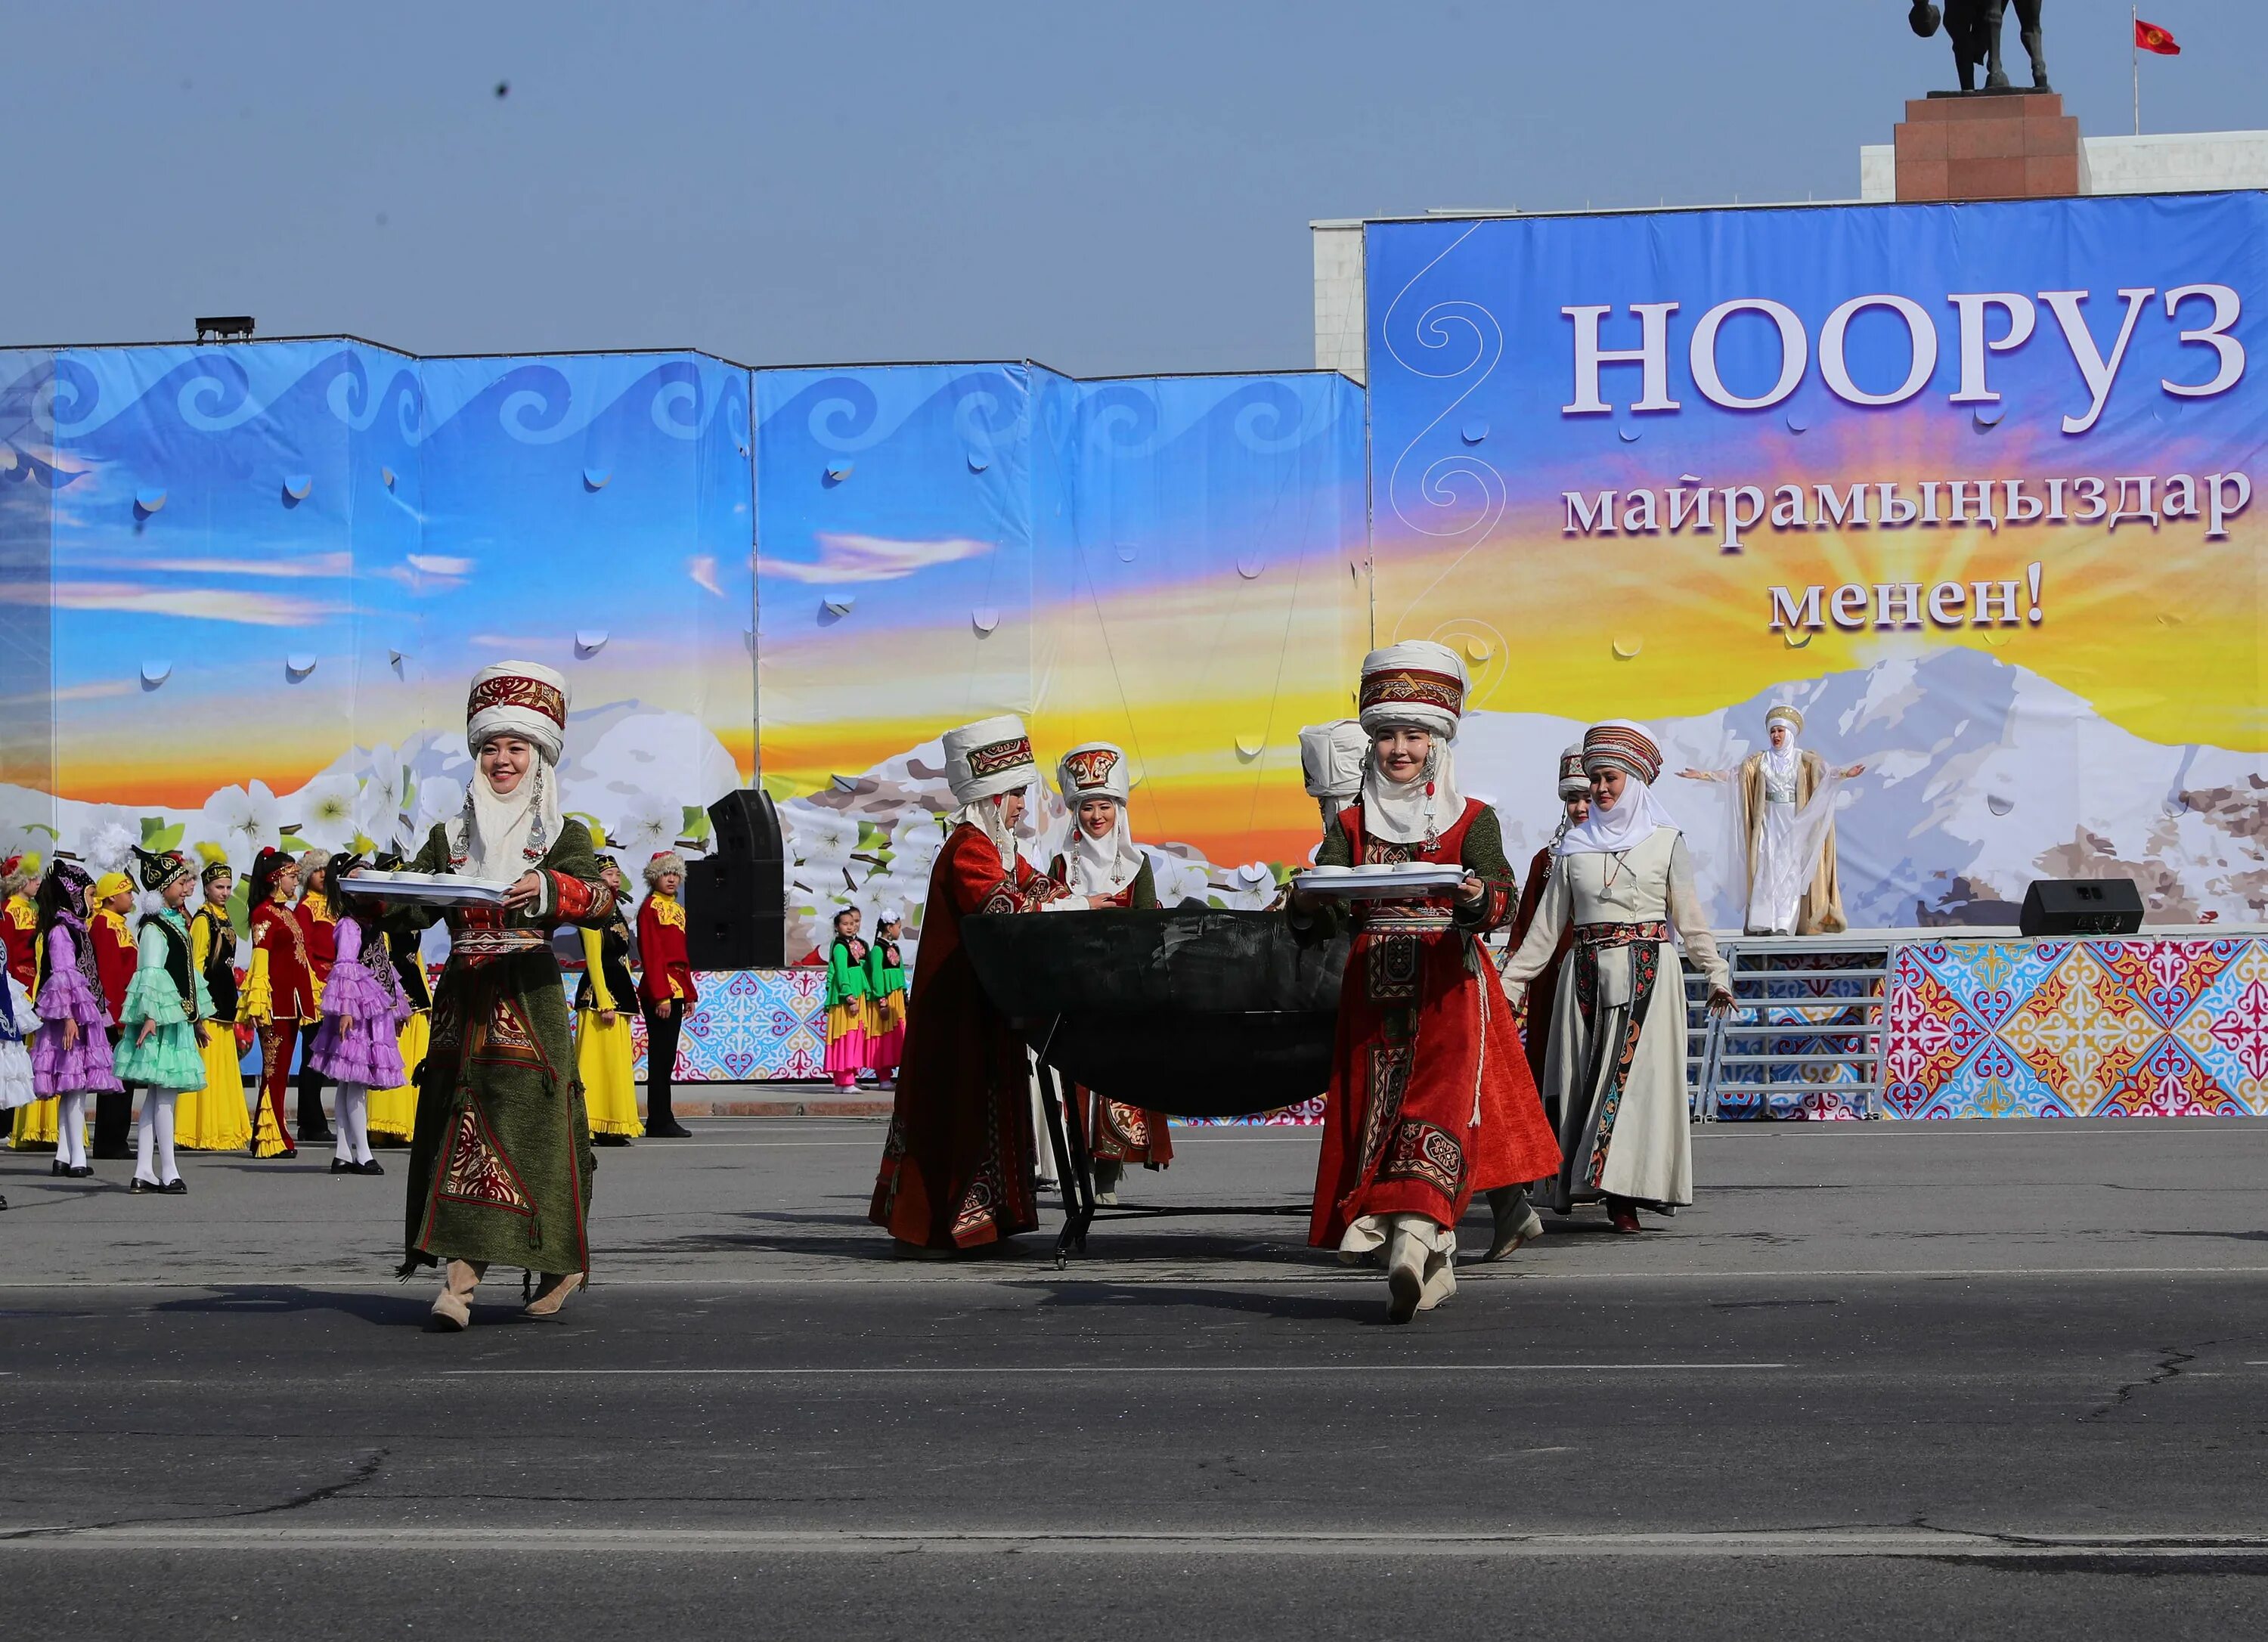 Праздники киргизов. Традиции Кыргызстана Нооруз. Праздник Нооруз Бишкек. Нооруз майрам Киргизия юрта. Нооруз в Кыргызстане сумолок.